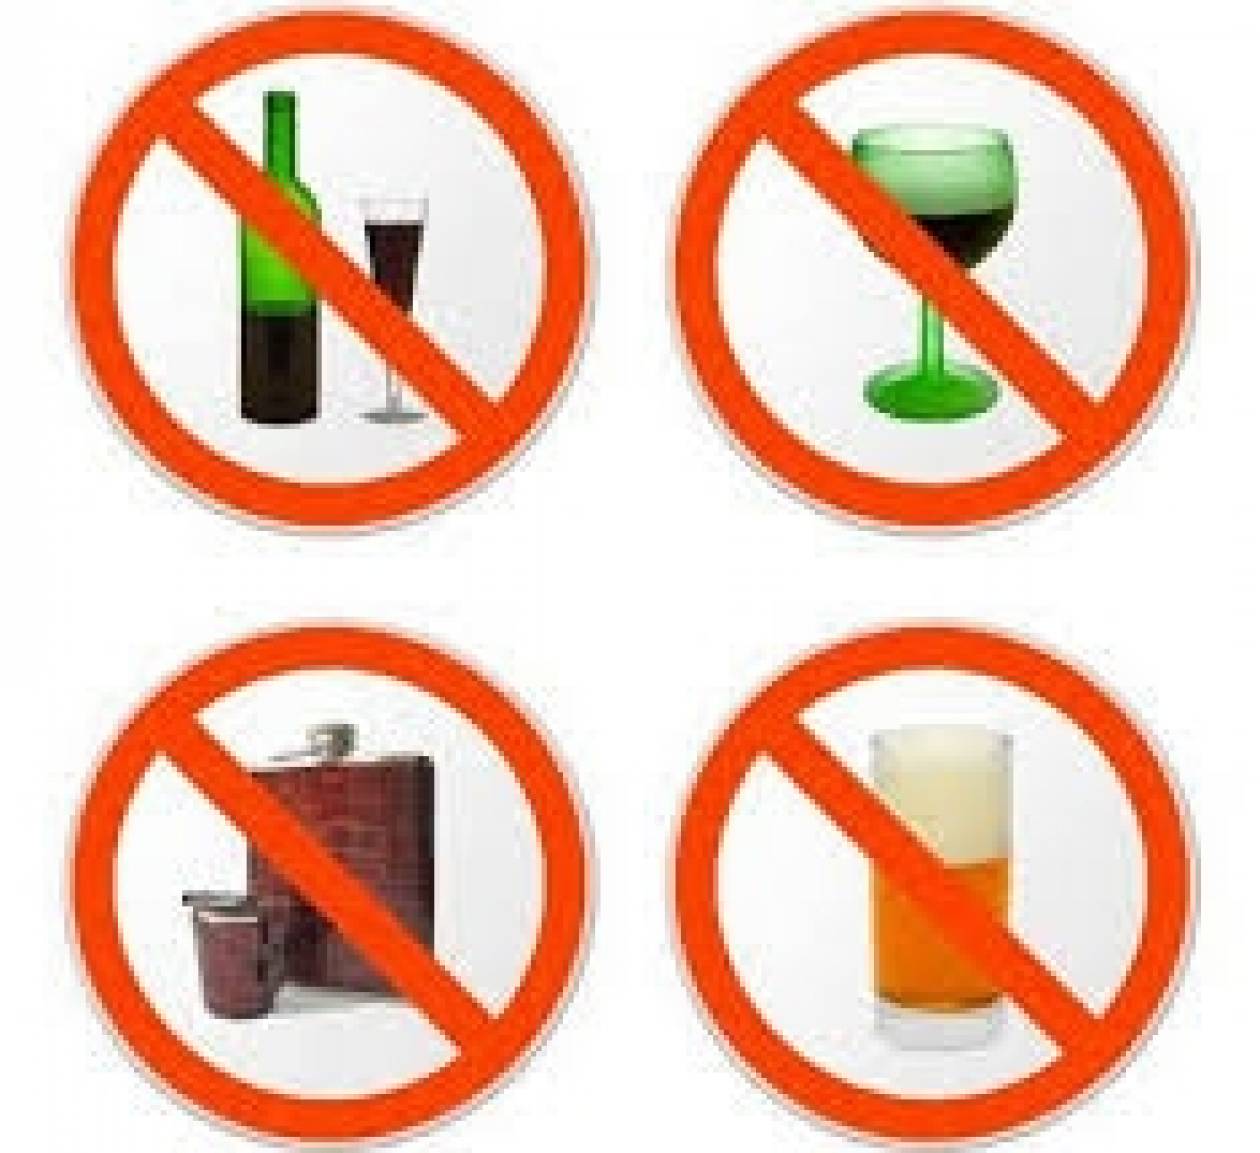 Ιράν: Το αλκοόλ μπορεί να είναι απαγορευμένο αλλά το προτιμούν!